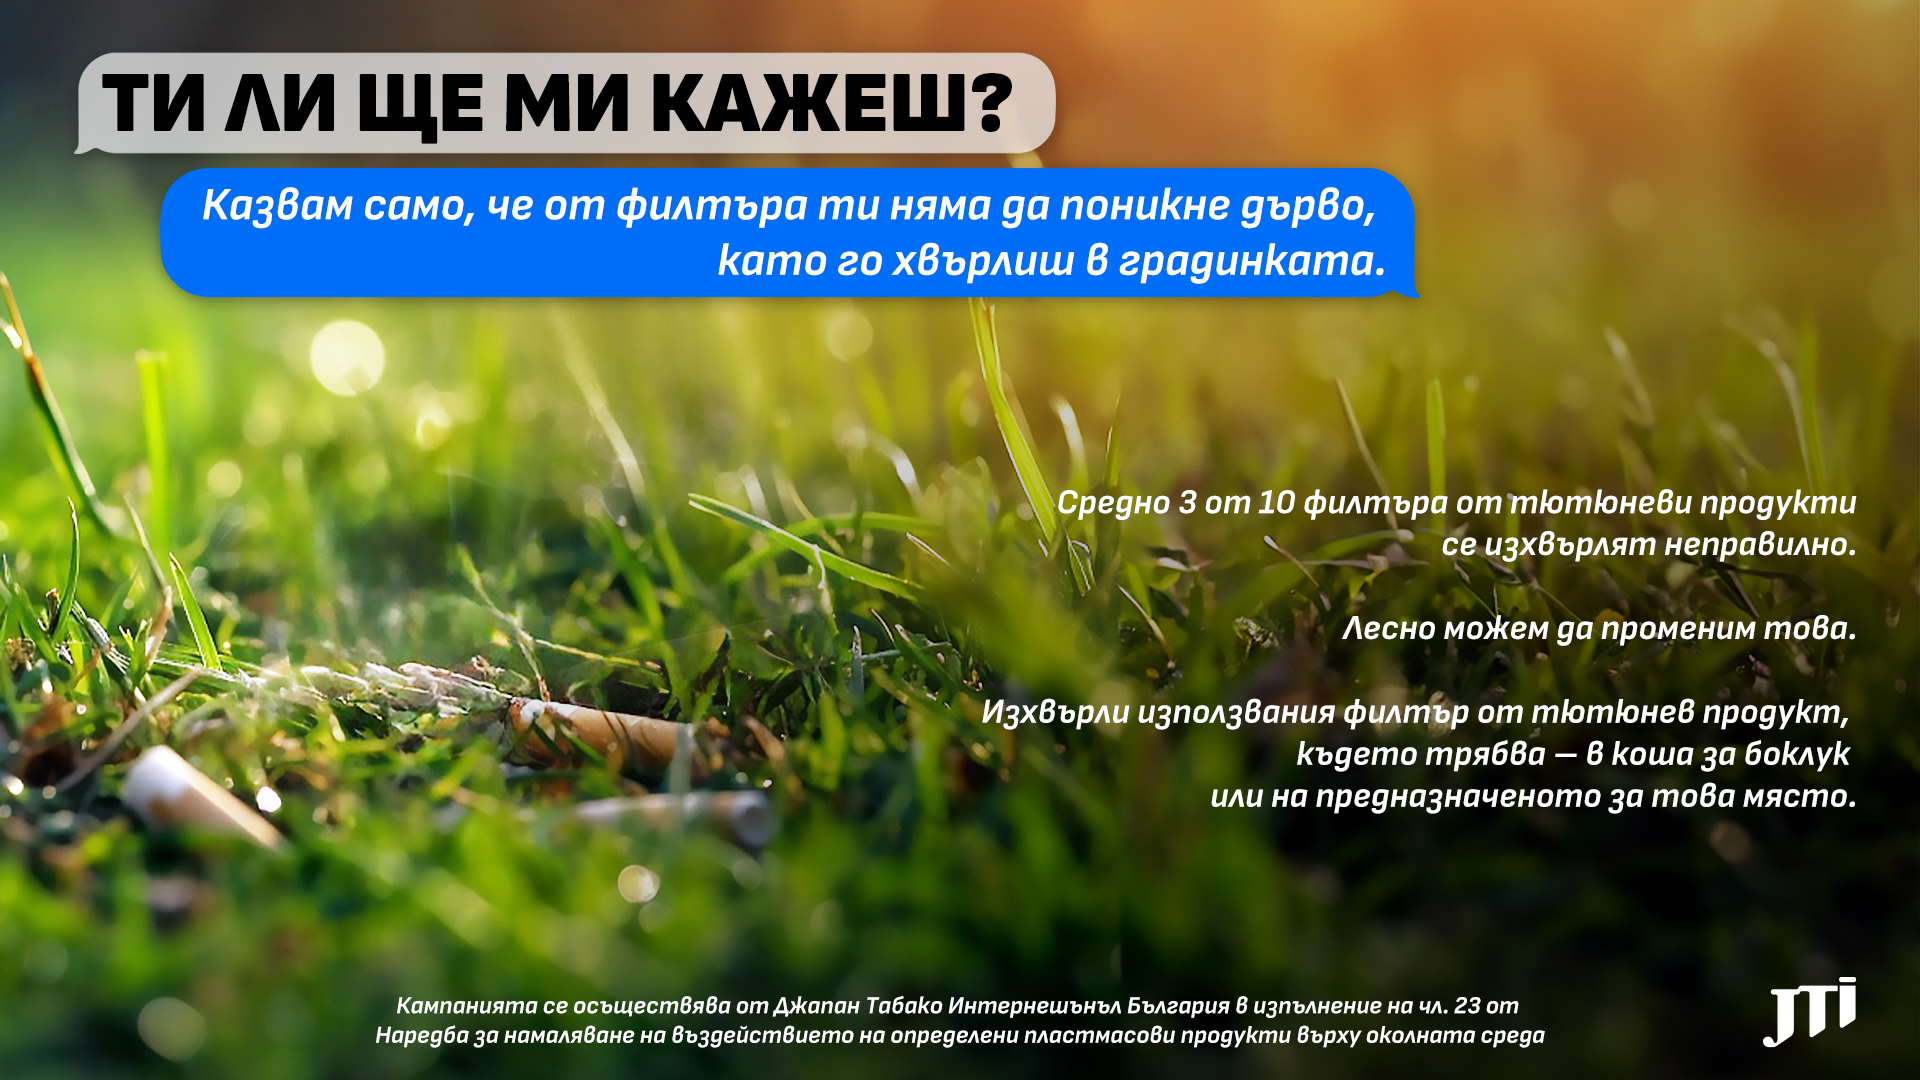 „Ти ли ще ми кажеш?“ – JTI България ни призовава да изхвърляме филтрите от тютюневи продукти на предназначените за това места